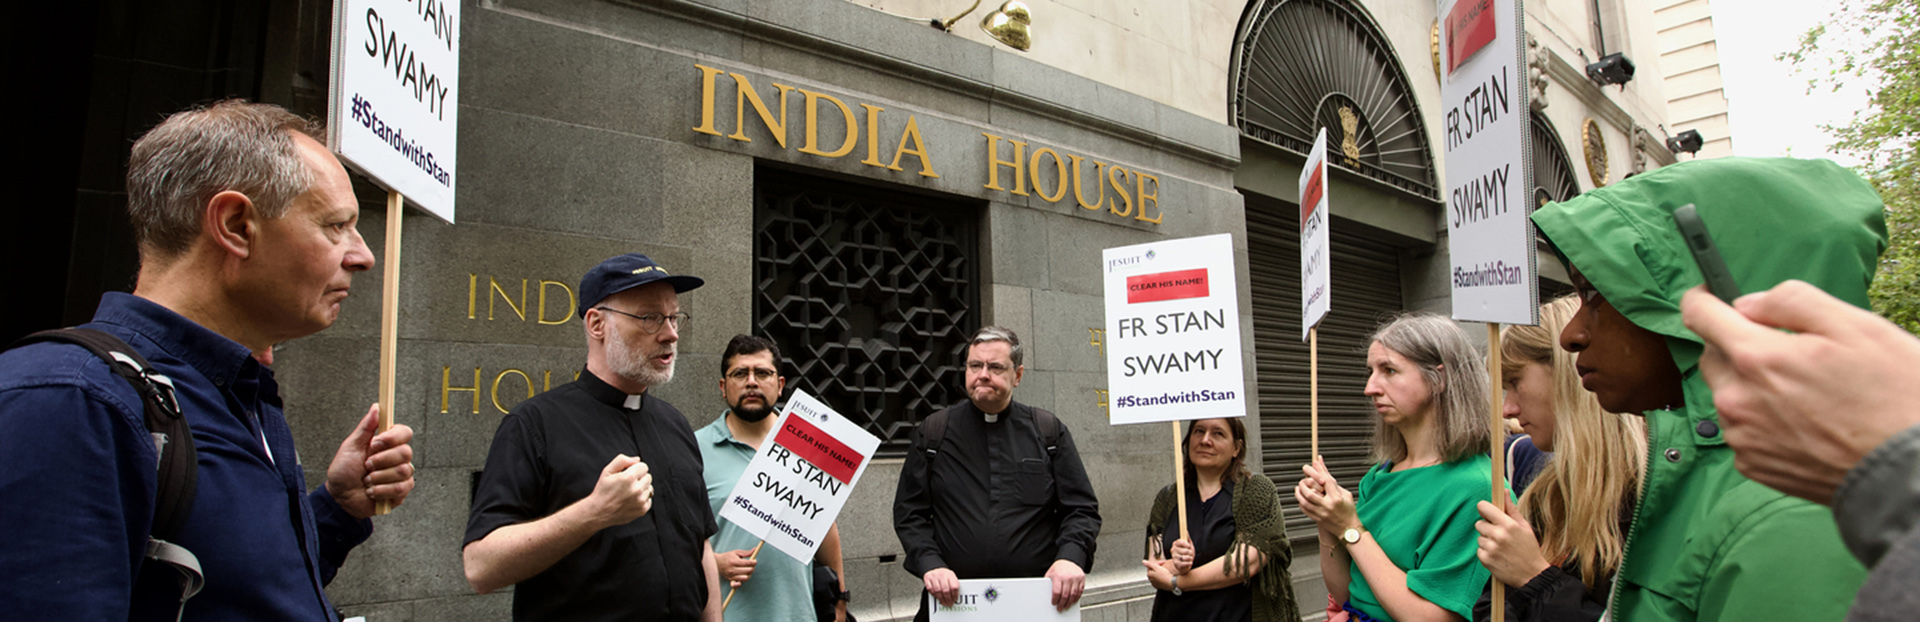 Global – Vigilia por Stan Swamy antes del segundo aniversario de su muerte